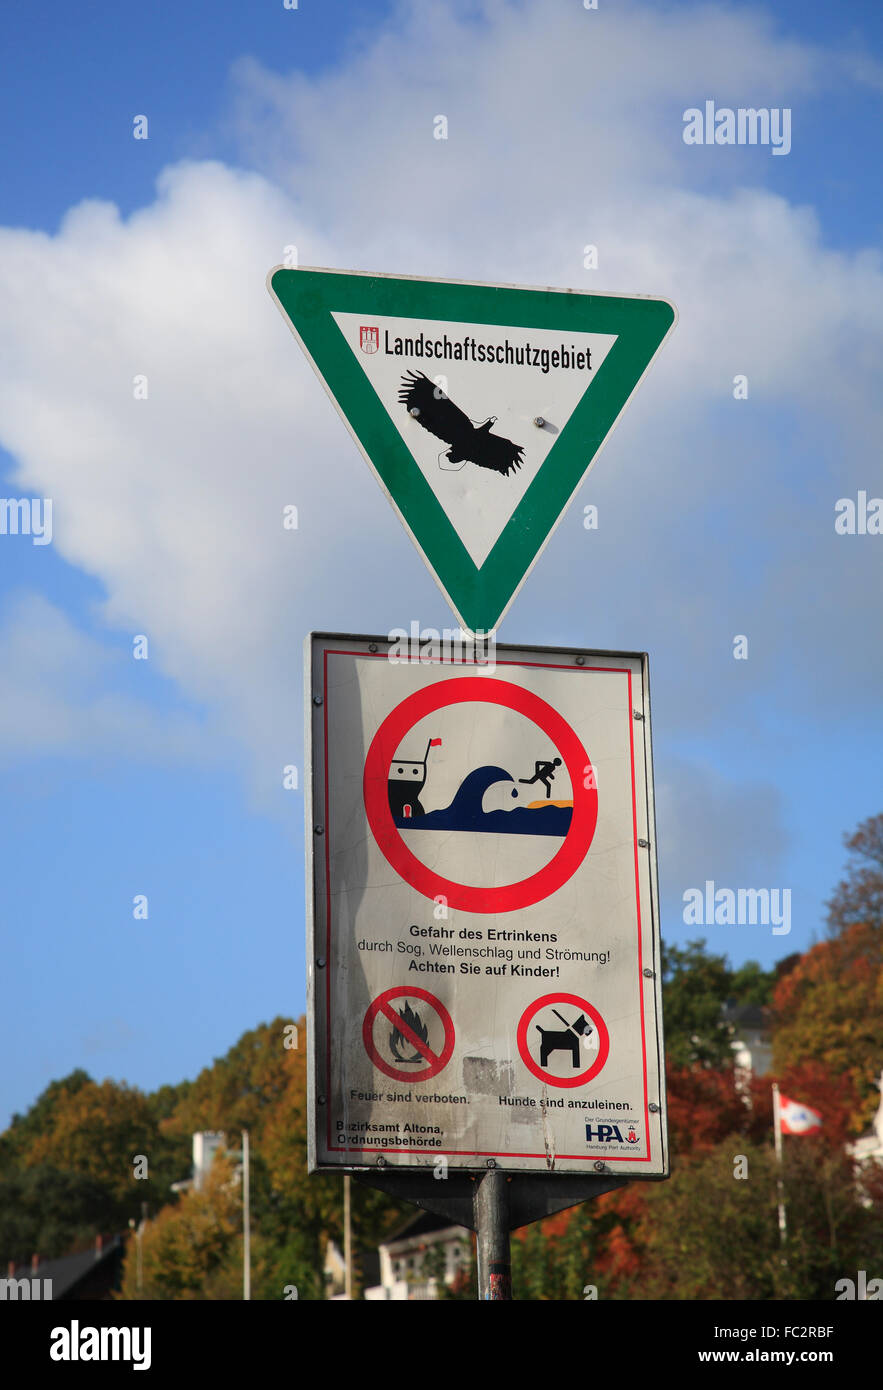 Warning sign at Elbe river, Oevelgoenne, Hamburg, Germany, Europe Stock Photo